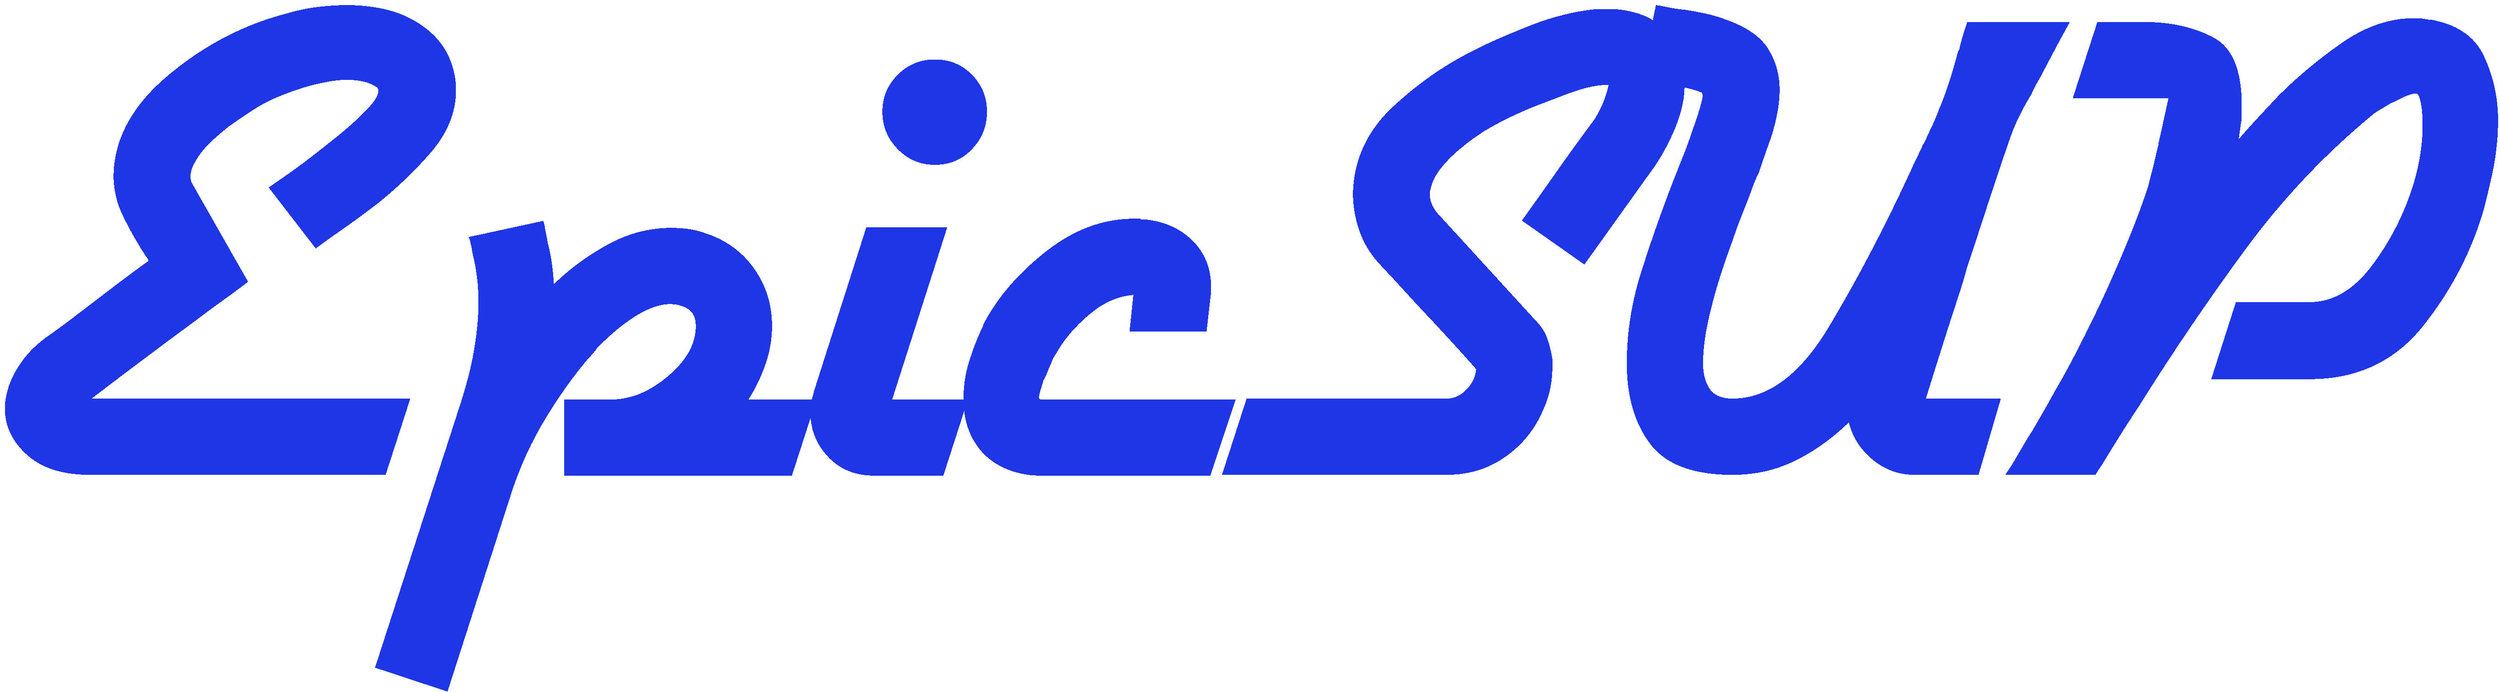 EpicSUP_logo